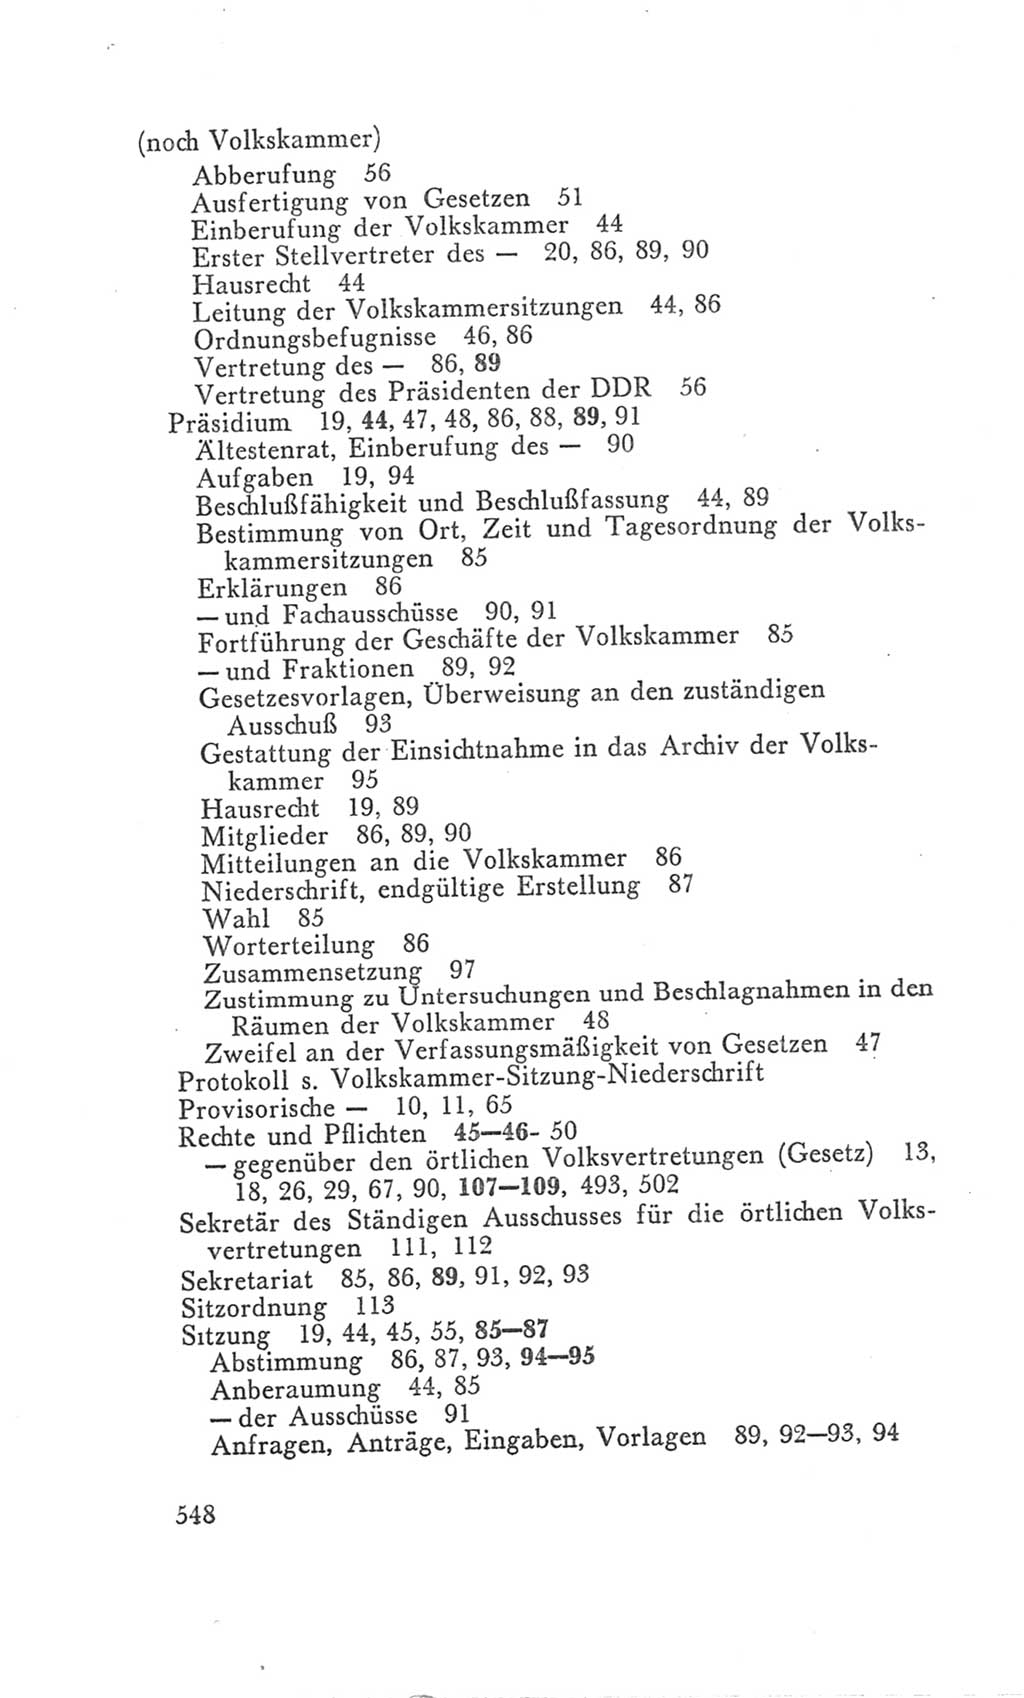 Handbuch der Volkskammer (VK) der Deutschen Demokratischen Republik (DDR), 3. Wahlperiode 1958-1963, Seite 548 (Hdb. VK. DDR 3. WP. 1958-1963, S. 548)